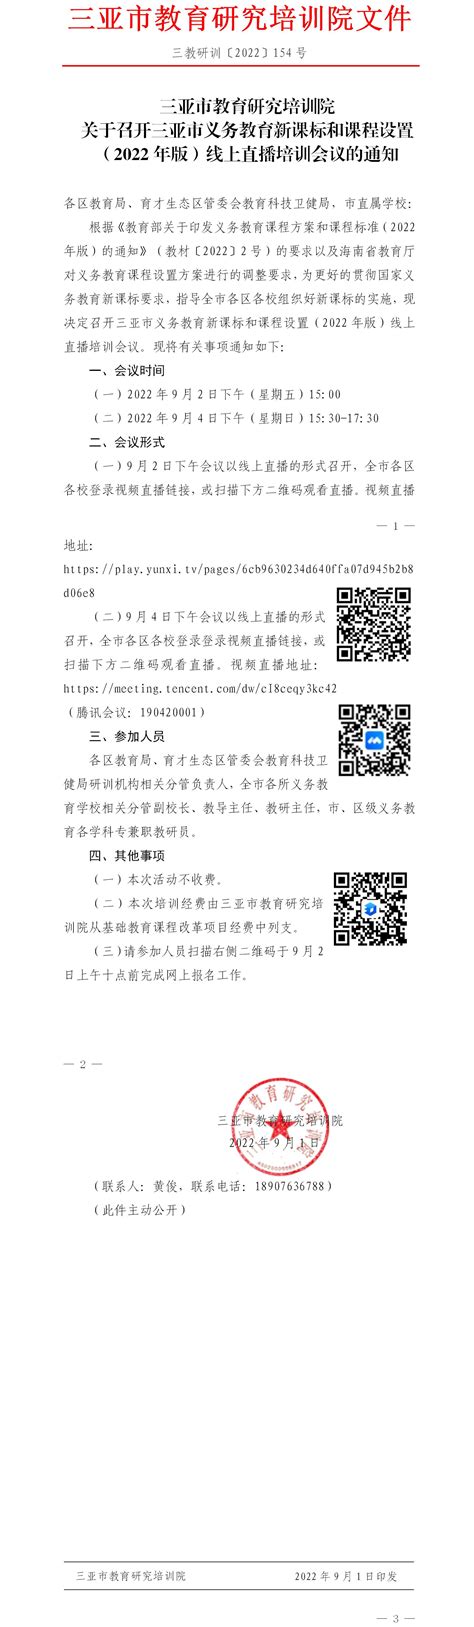 宝安区2021年小一学位网上申请系统zs.baoan.gov.cn/visitbagbxyjz_考试资讯_第一雅虎网